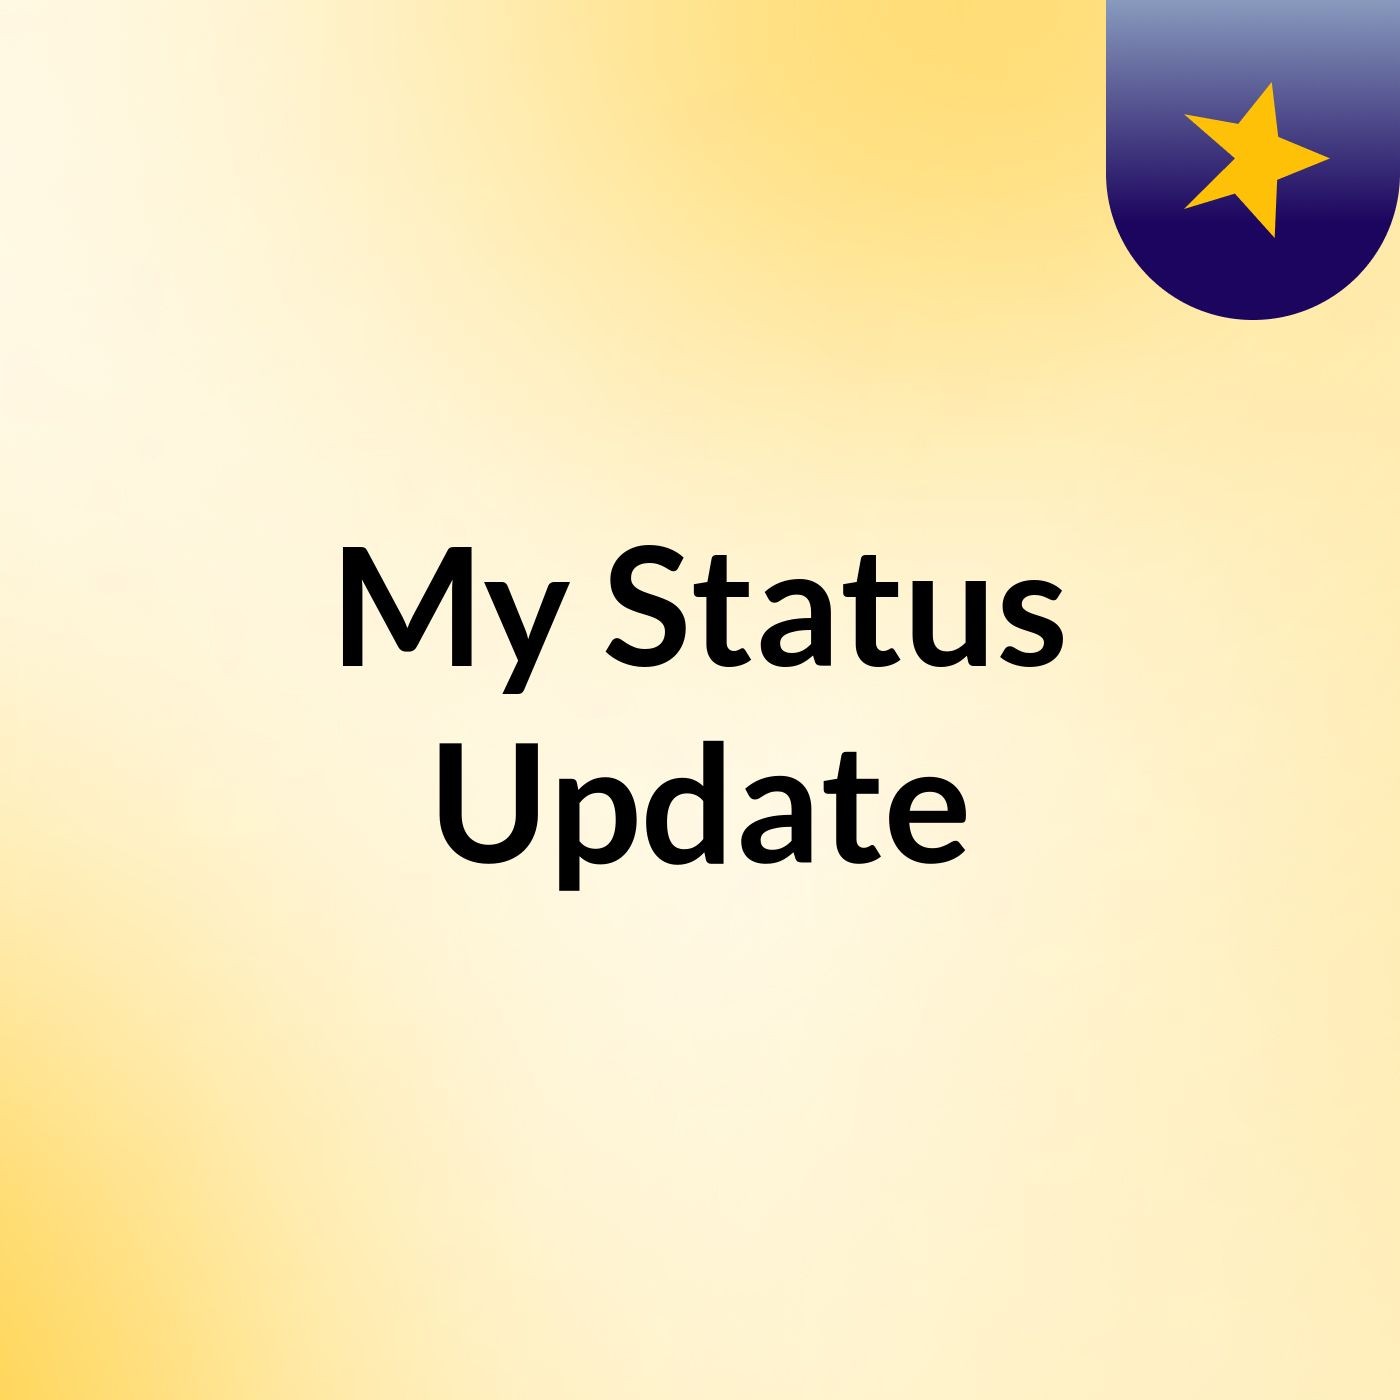 My Status Update